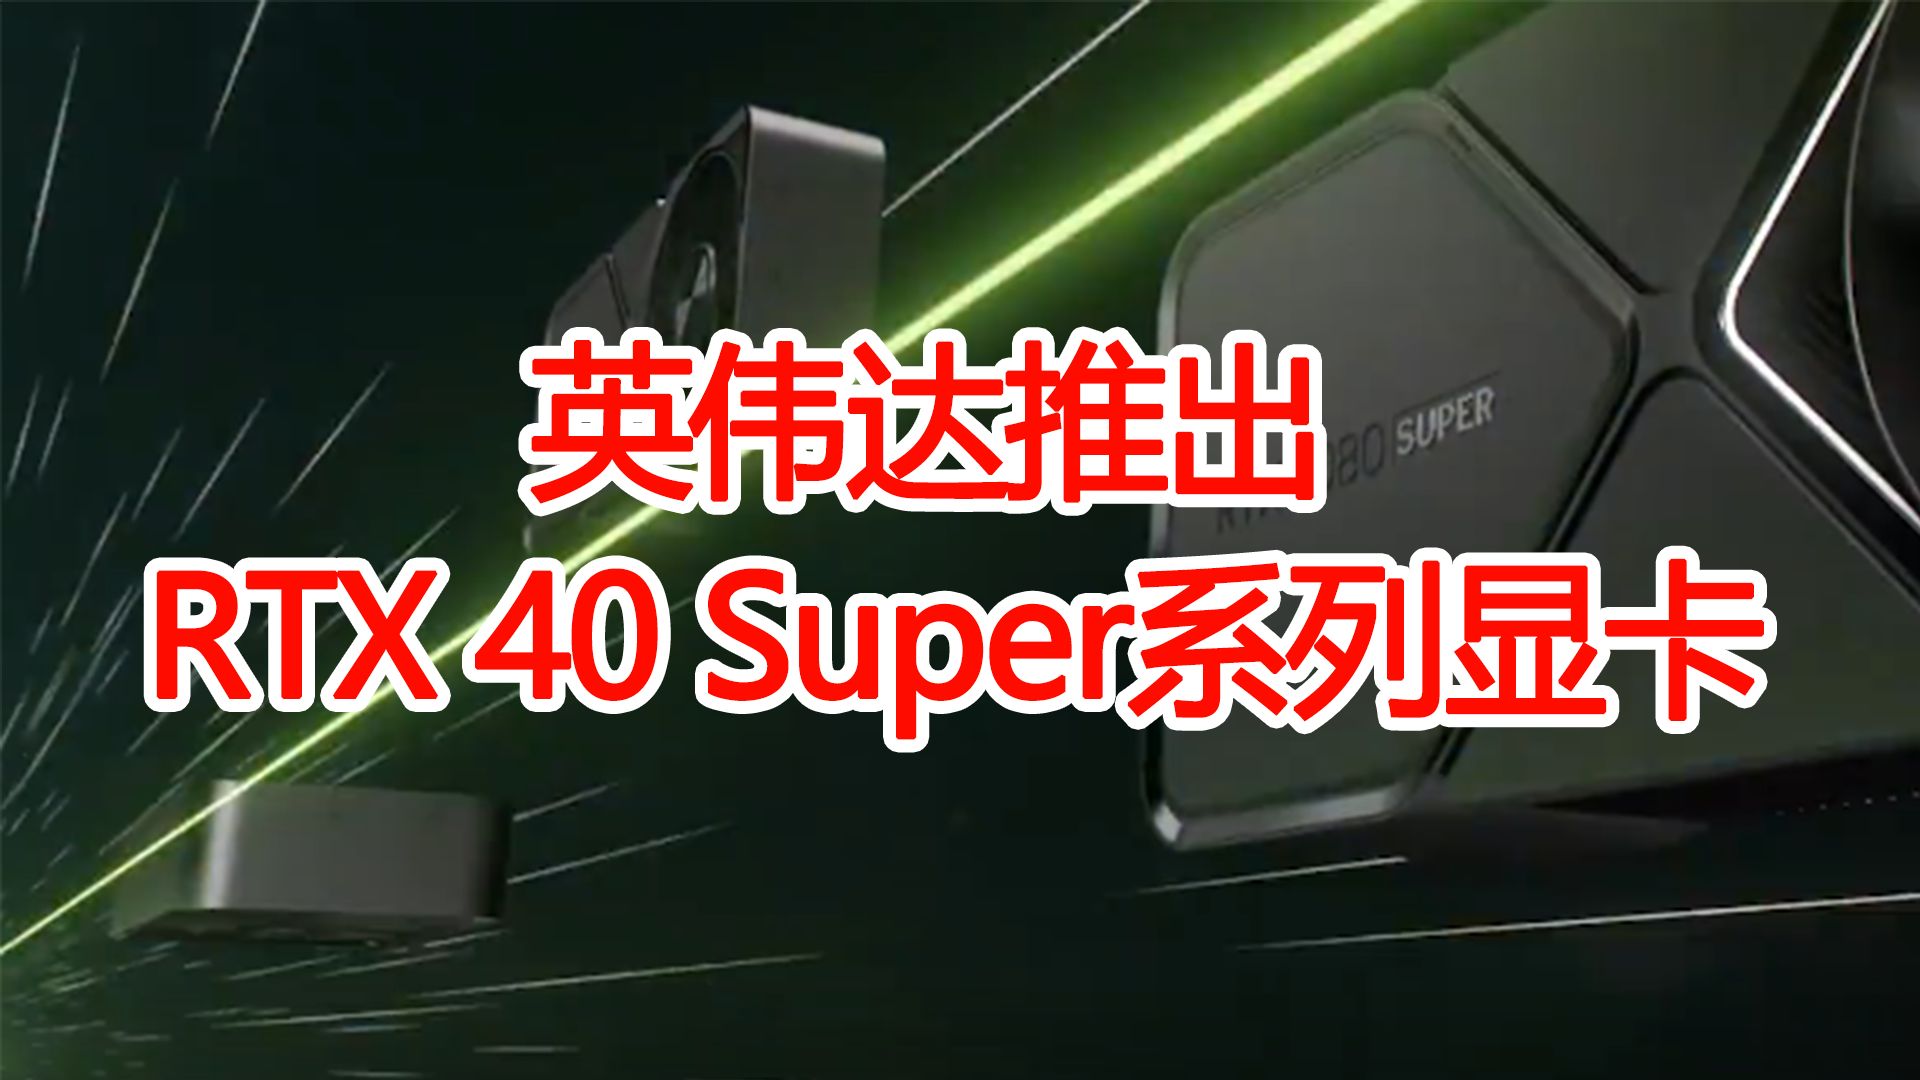 英伟达推出rtx 40 super系列显卡,可用于人工智能